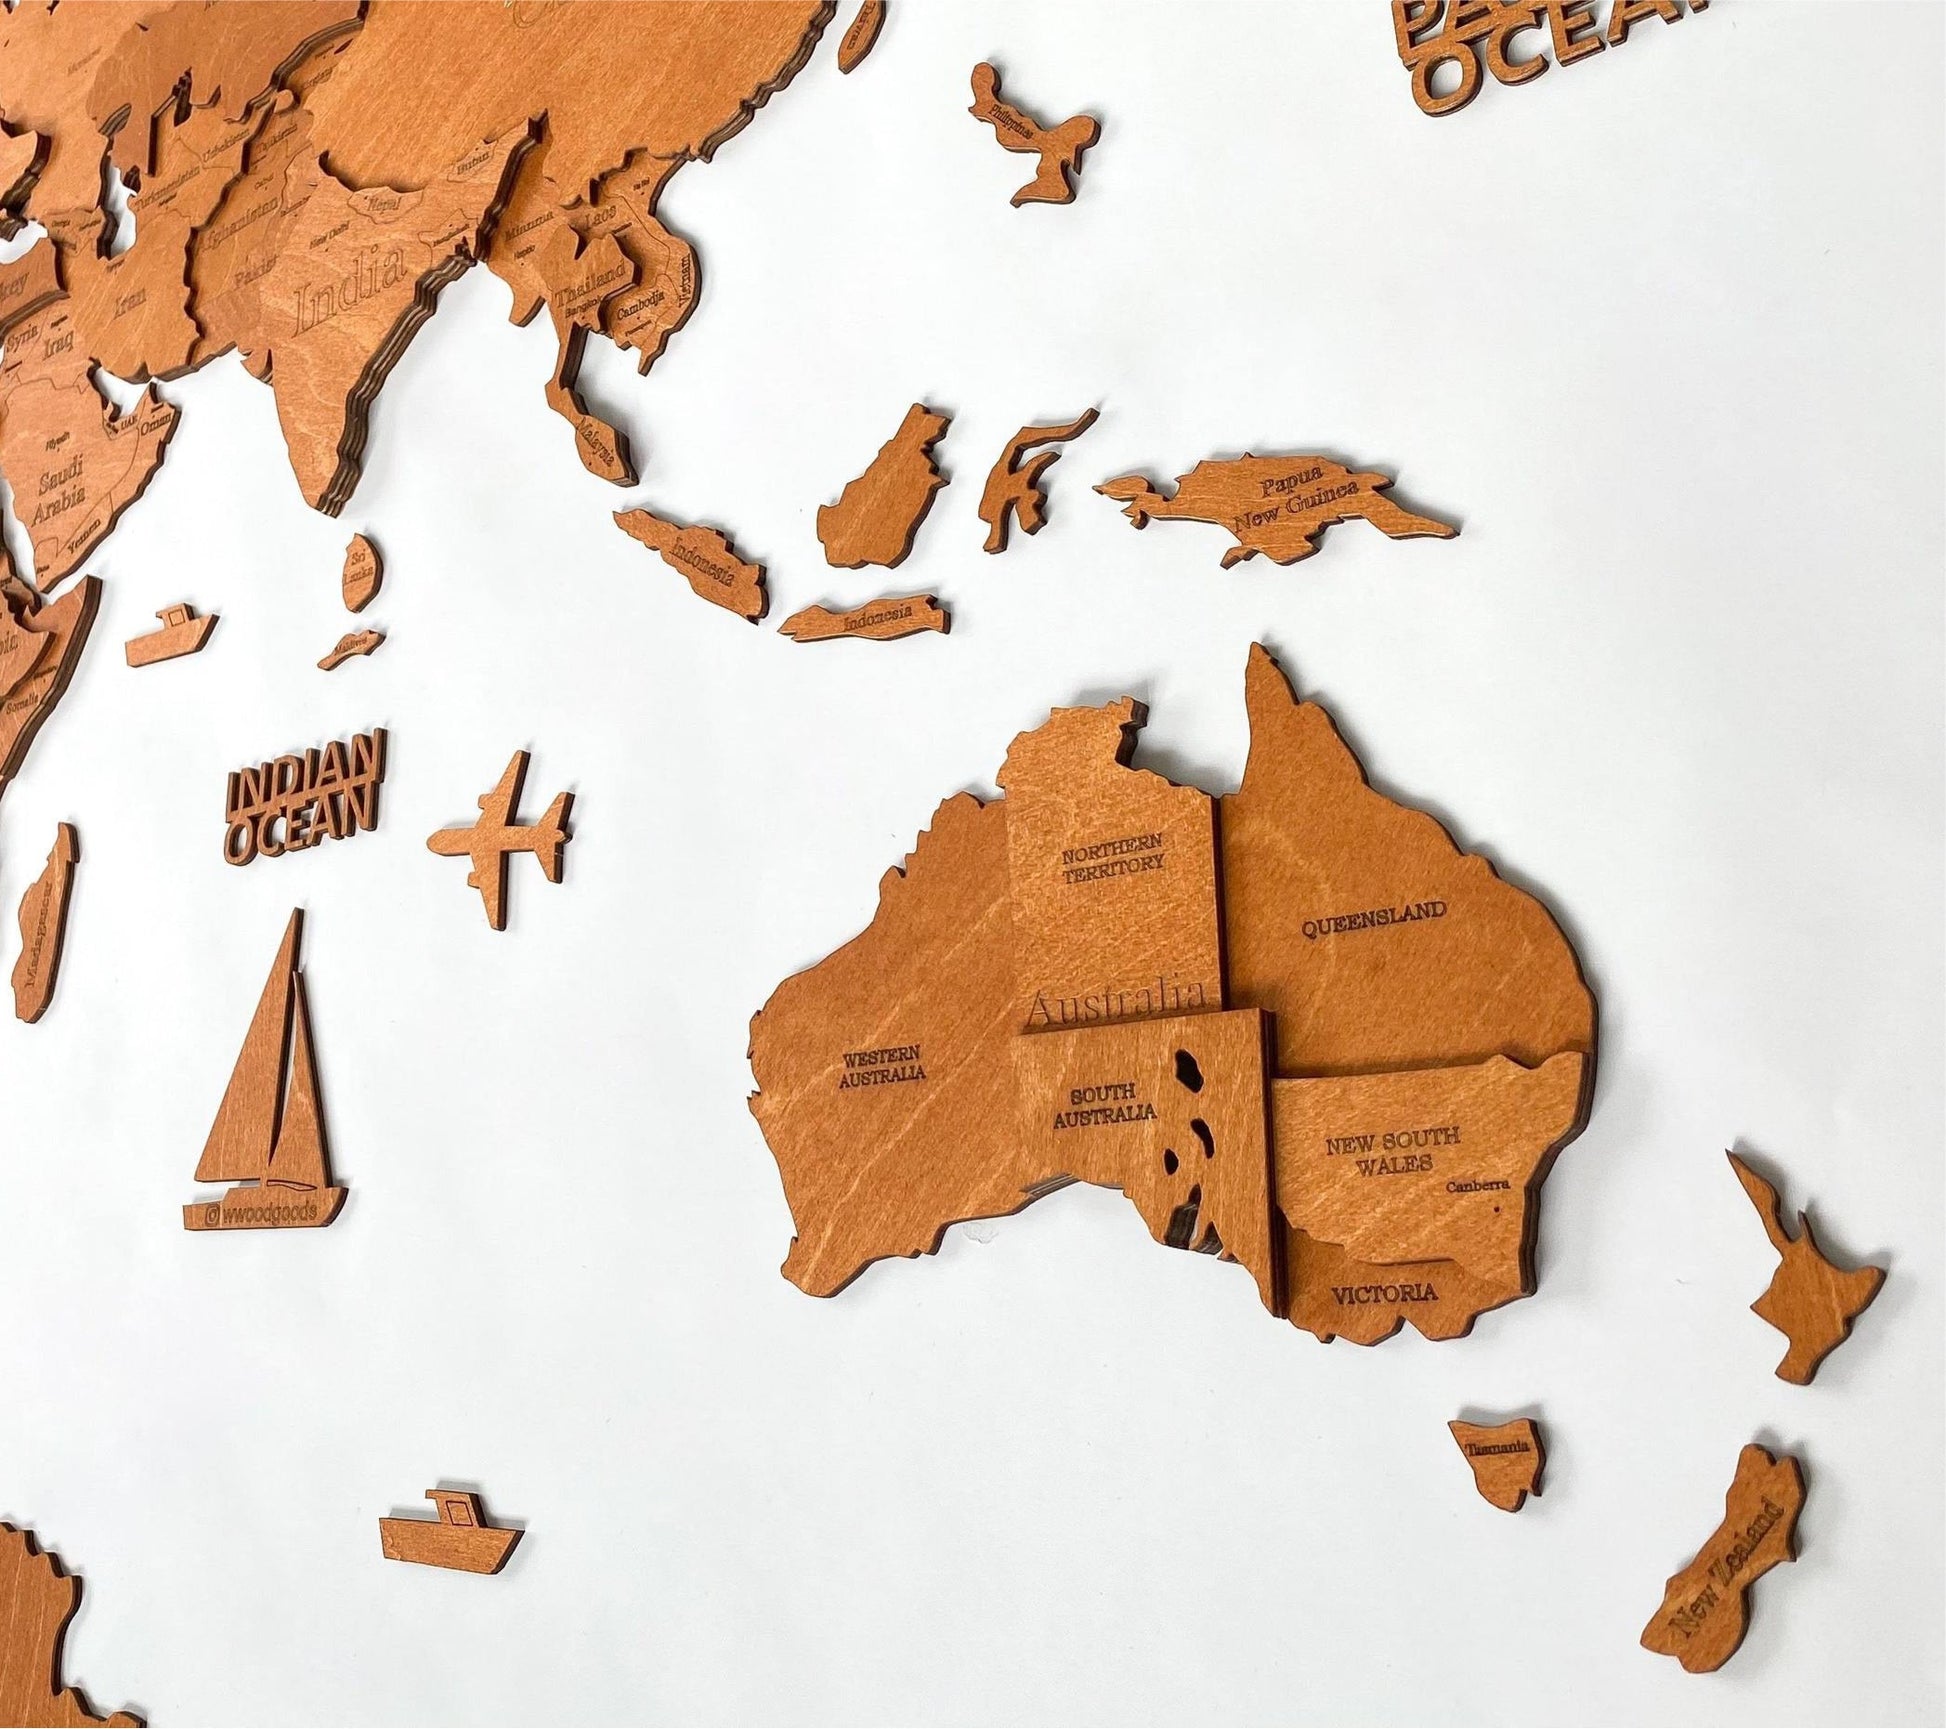 Wooden World Map 3D - Walnut 